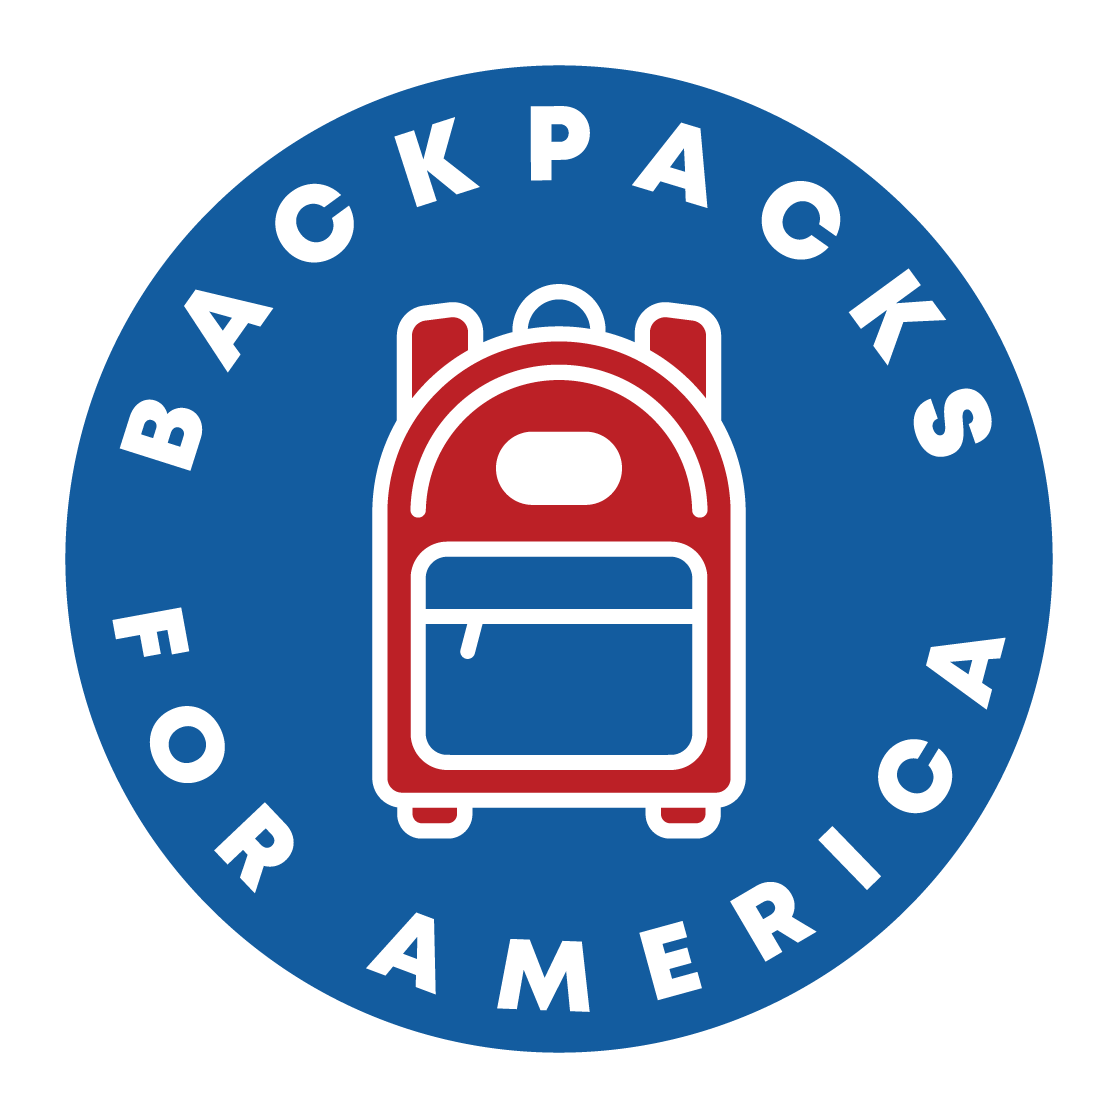 Backpacks for America